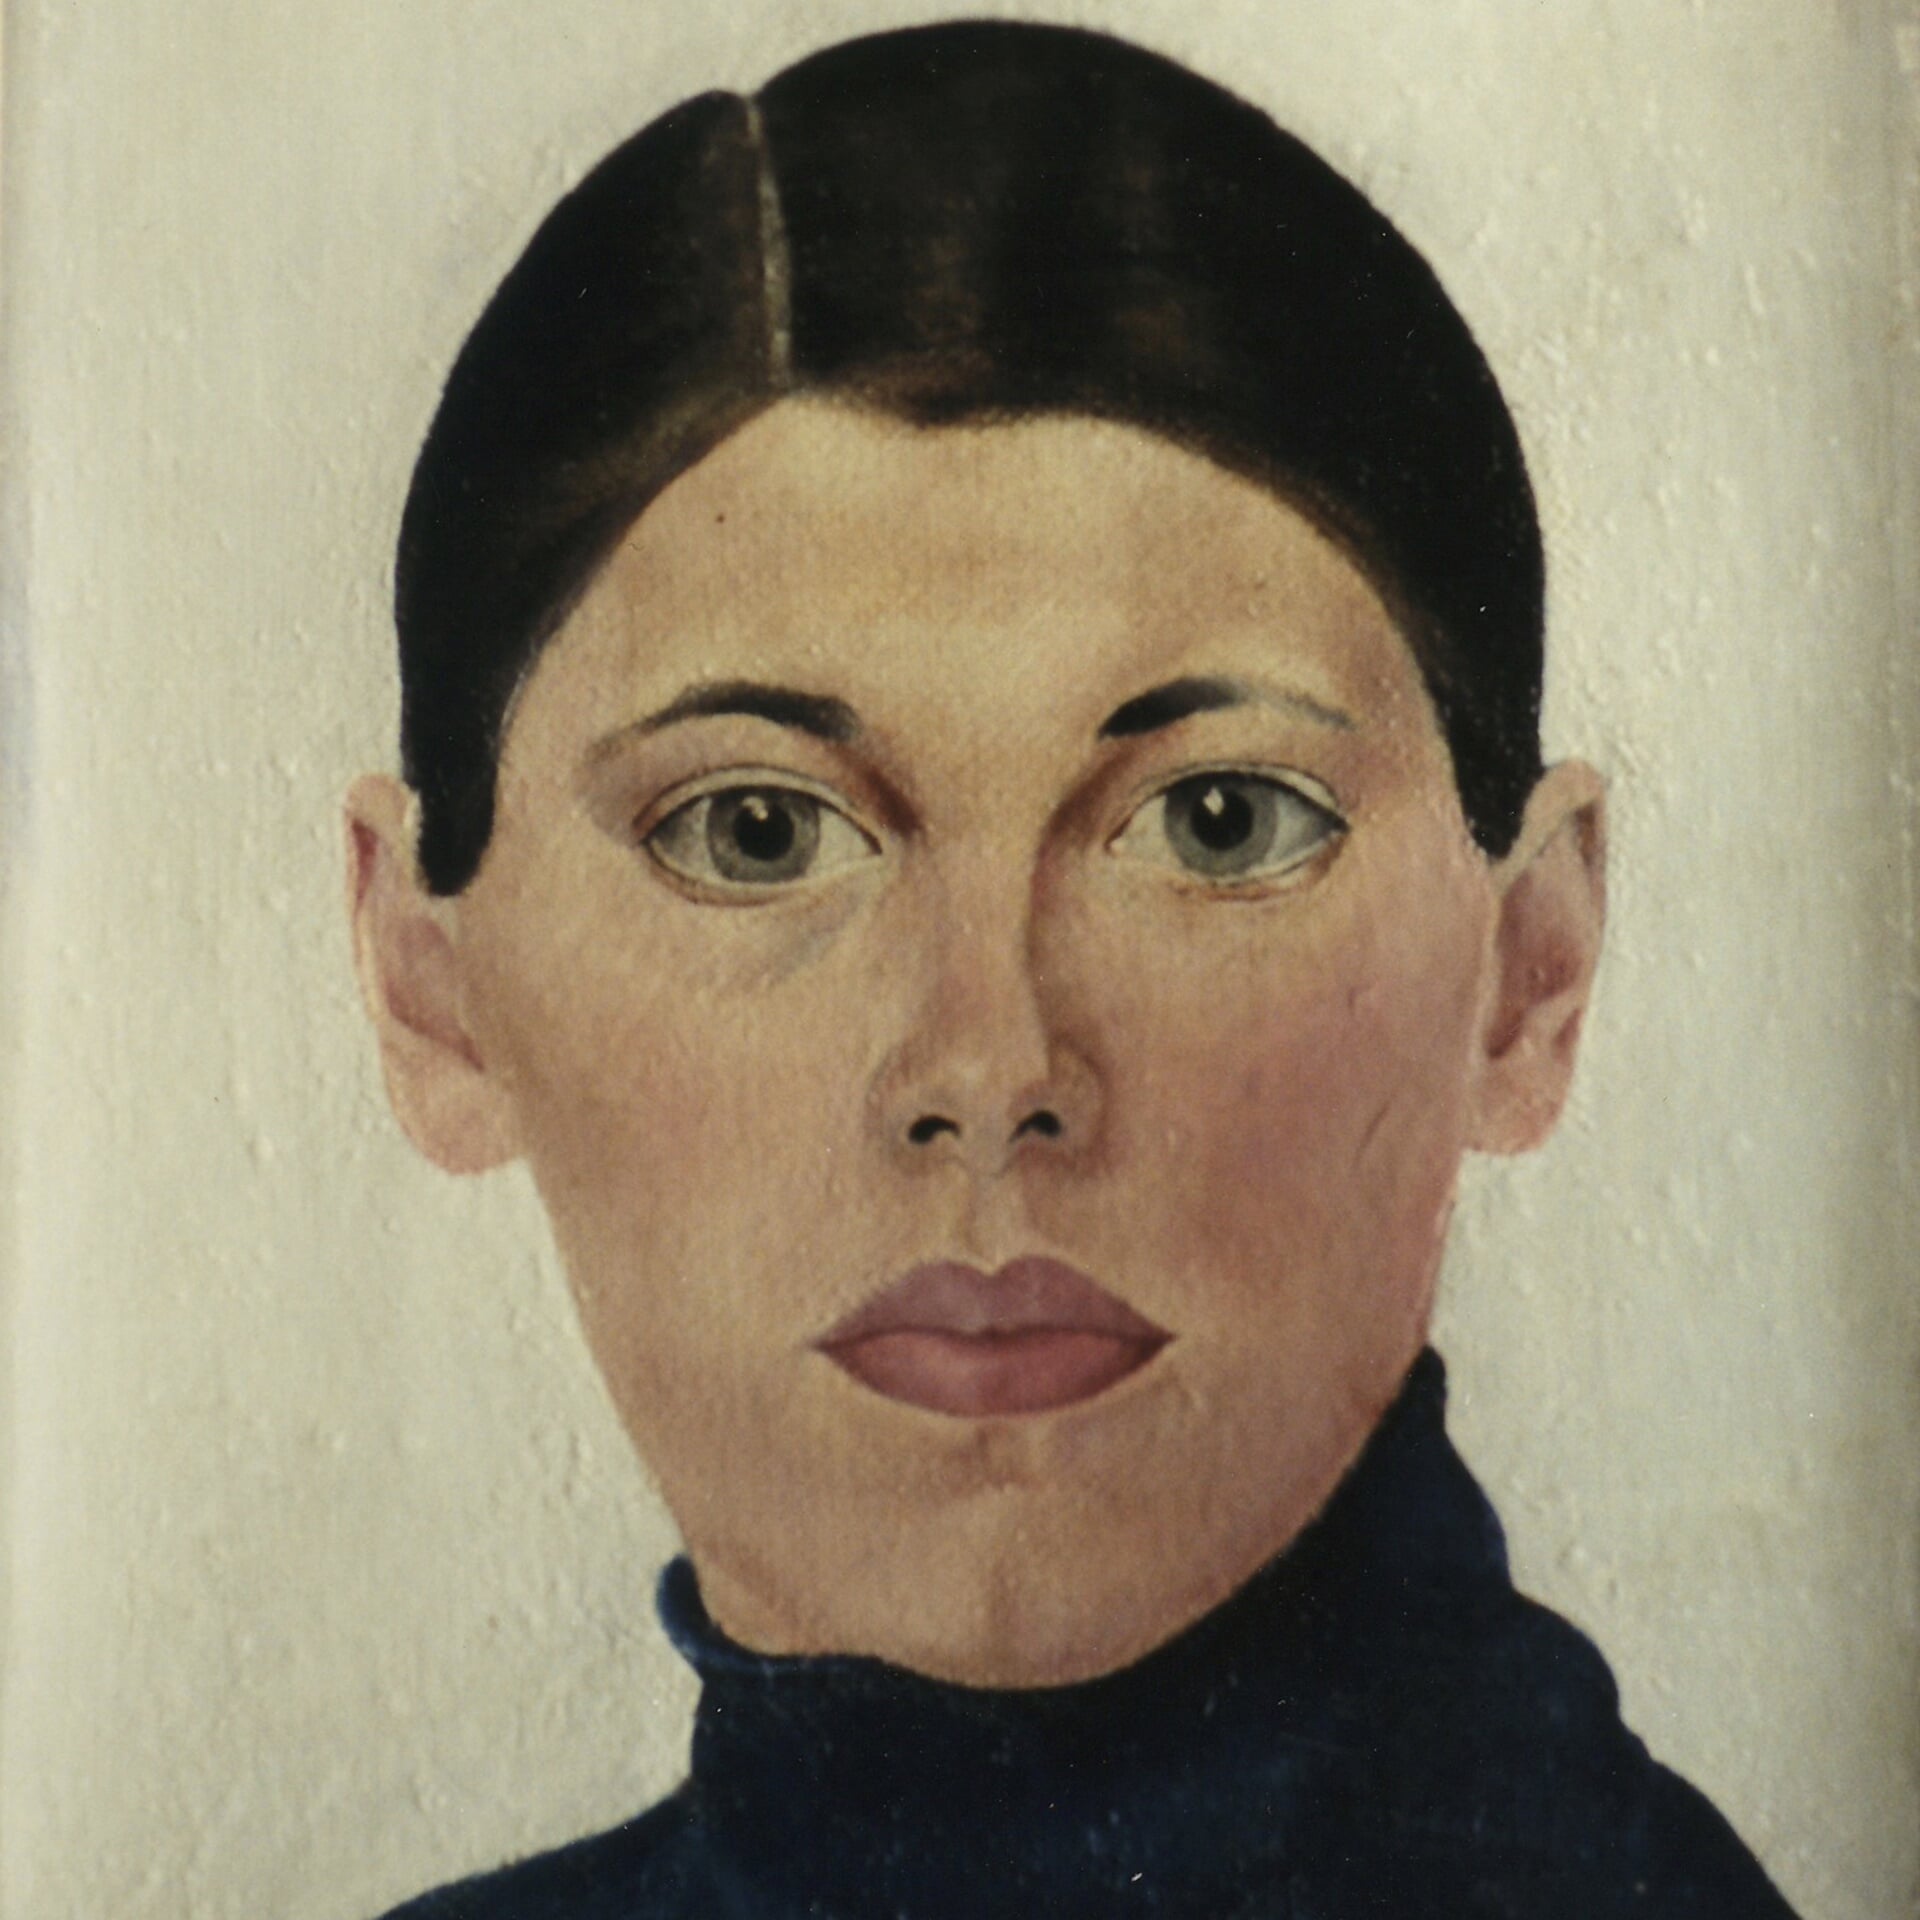 Eerste zelfportret Bep Rietveld 1932, leerling van Charley Toorop, hier 17 jaar oud. Sinds kort in de collectie opgenomen van het Rijksmuseum te Amsterdam